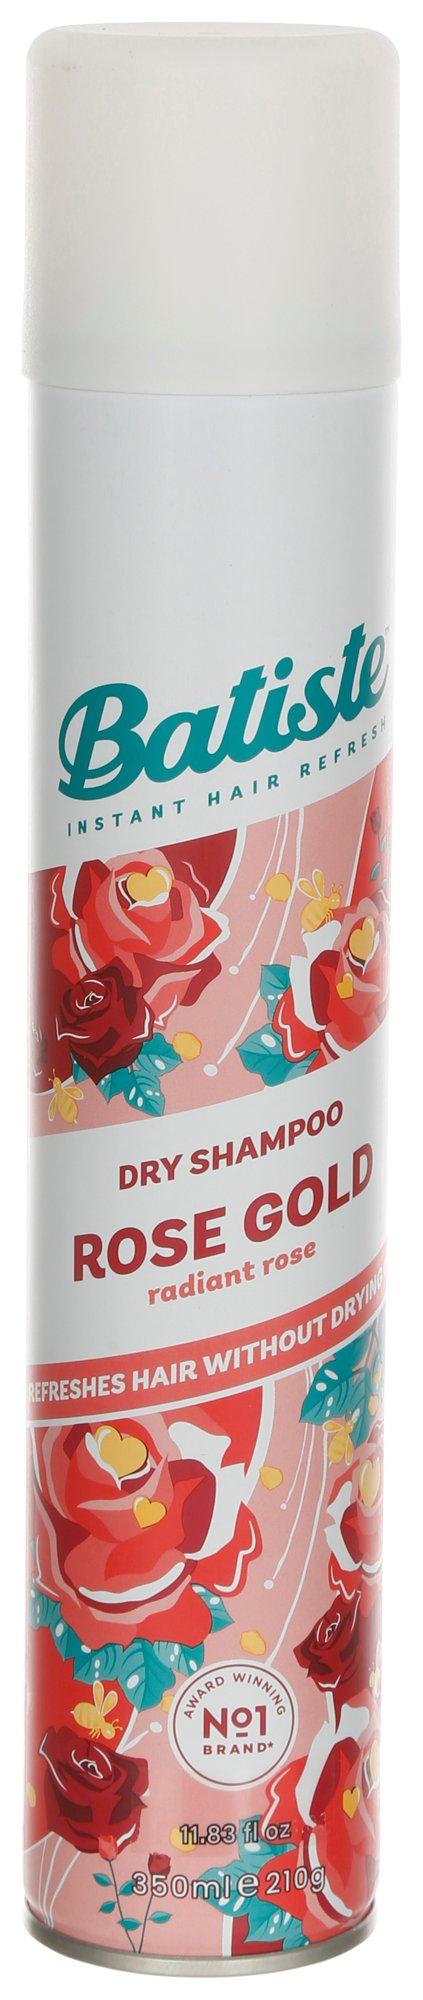 11.8 oz Rose Gold Dry Shampoo